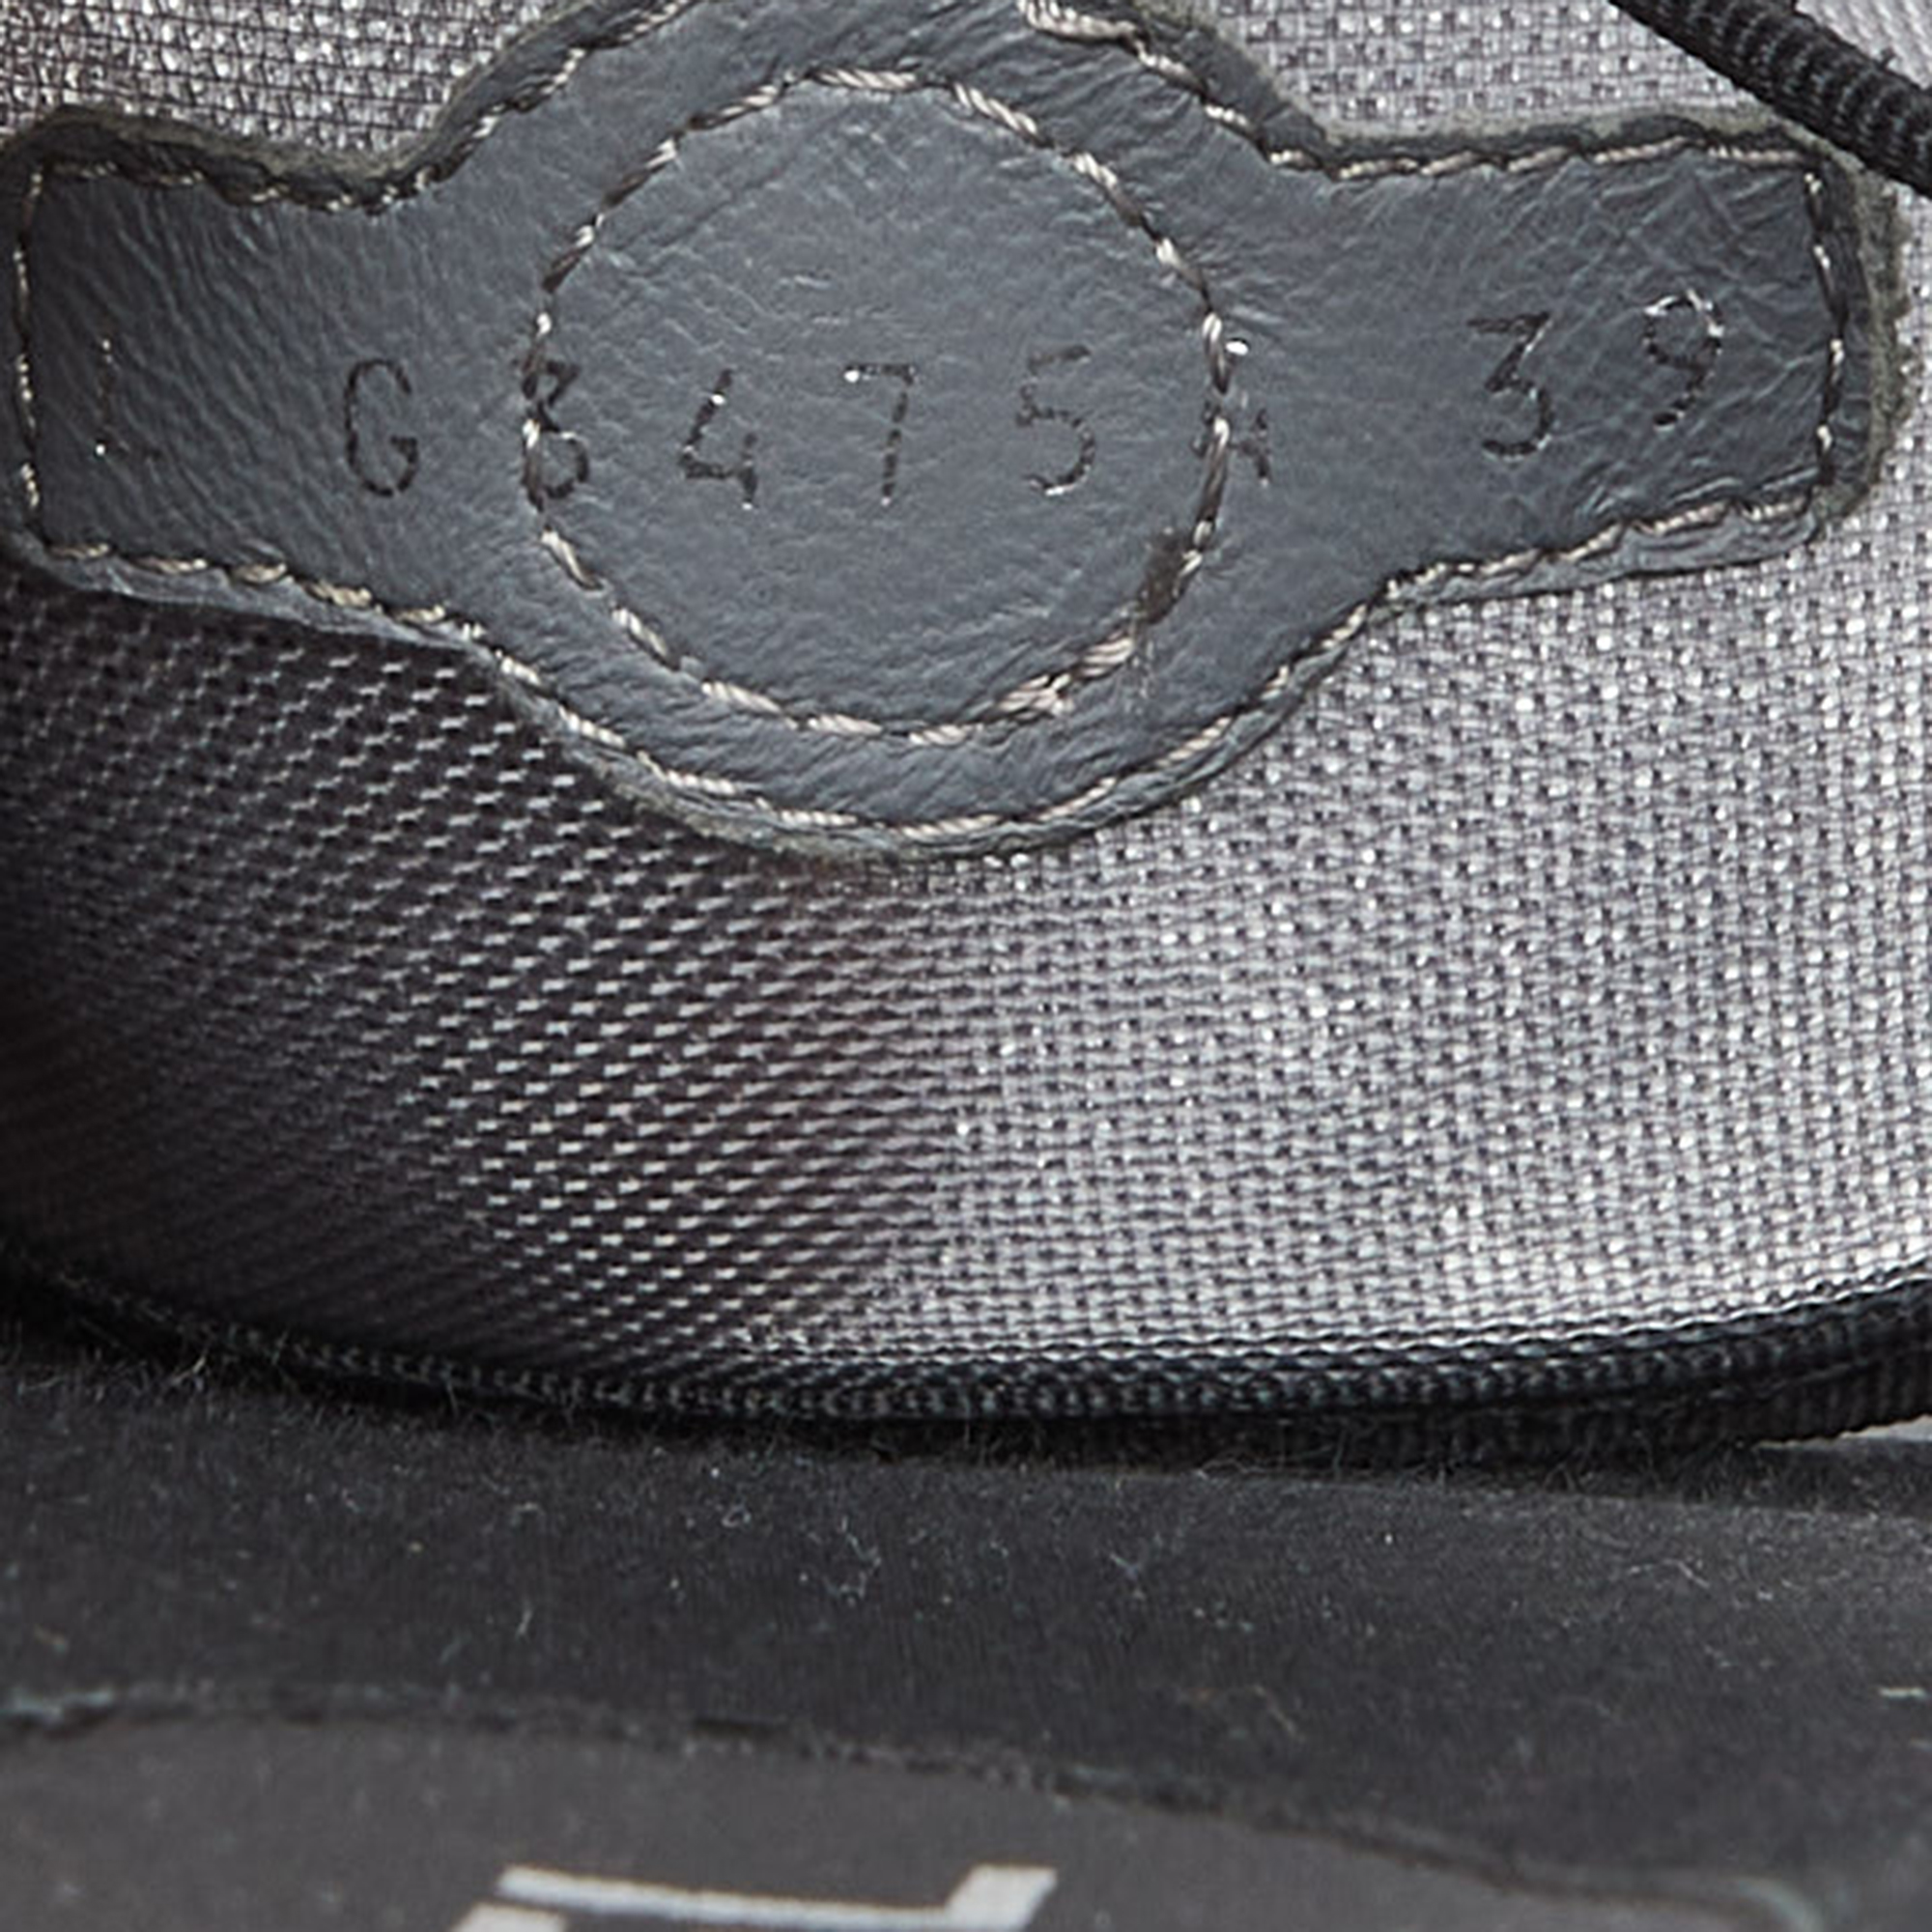 Chanel Grey/Black Mesh Camellia Slide Flat Sandals Size 39